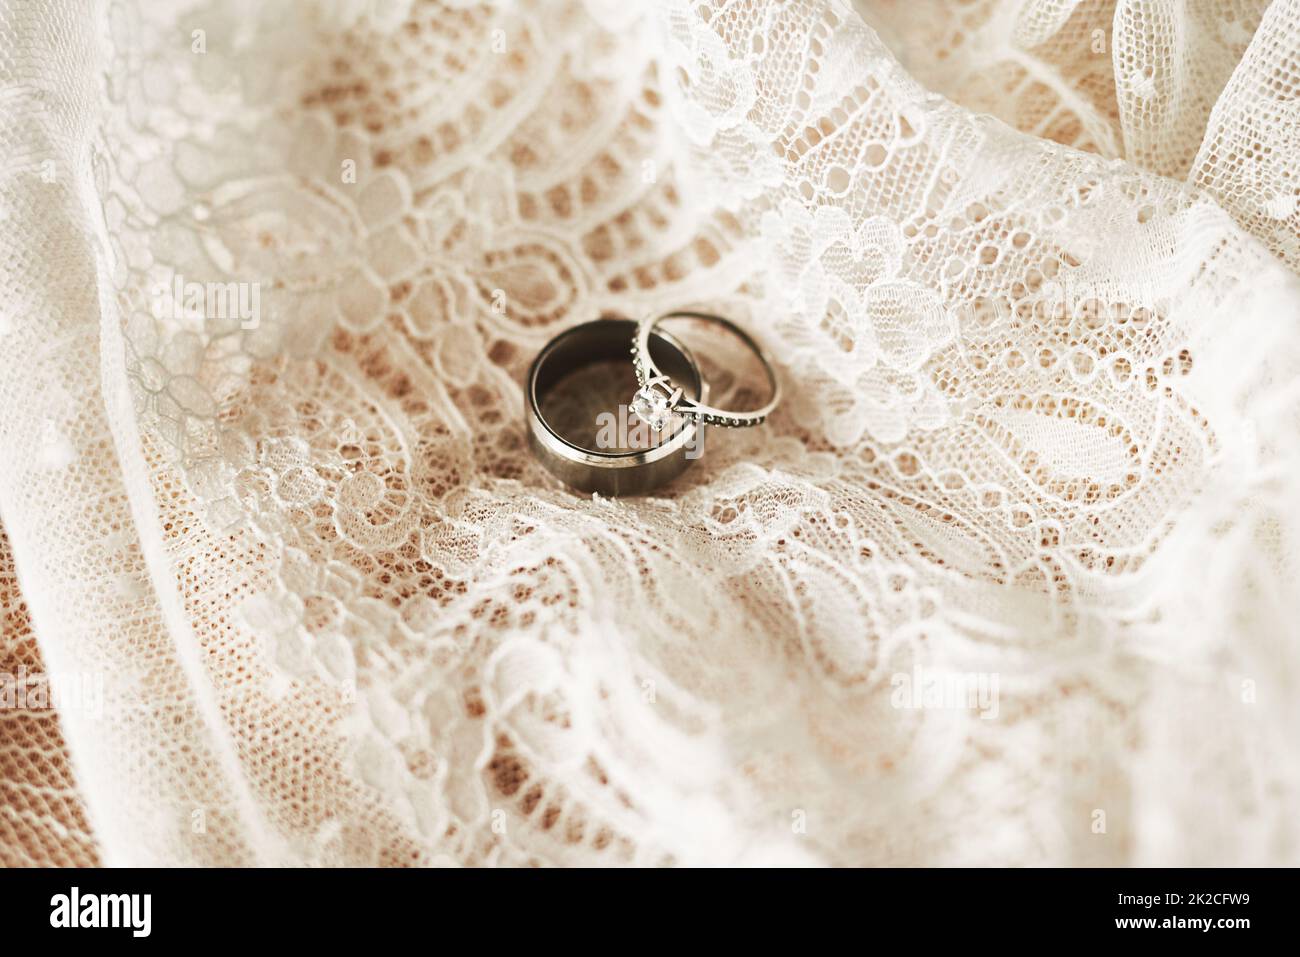 Sie symbolisieren unser lebenslanges Engagement füreinander. Stillleben von zwei schönen Eheringen auf einem Hochzeitskleid. Stockfoto